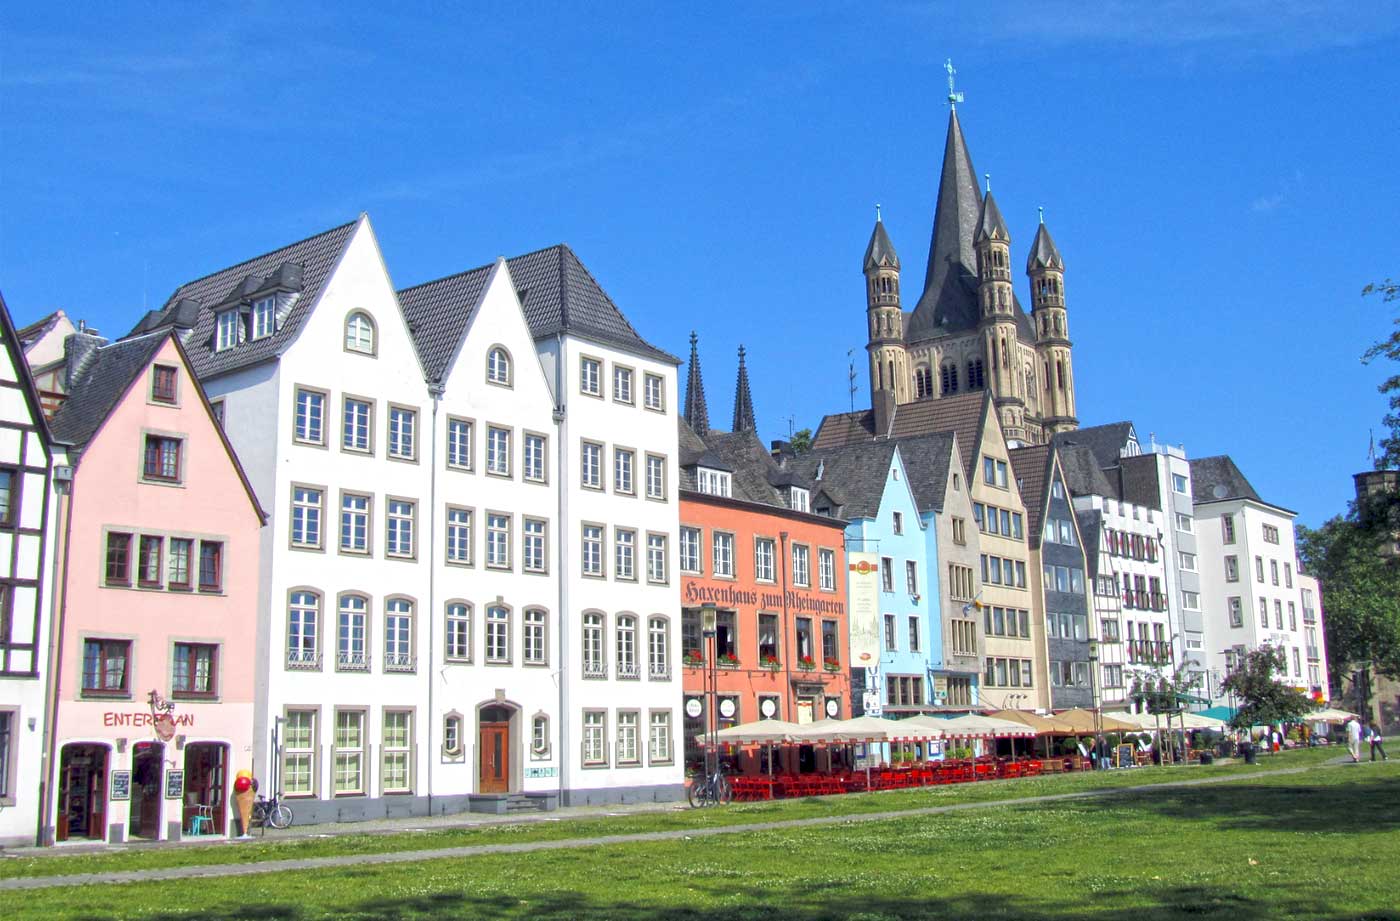 Altstadt (Old Town)